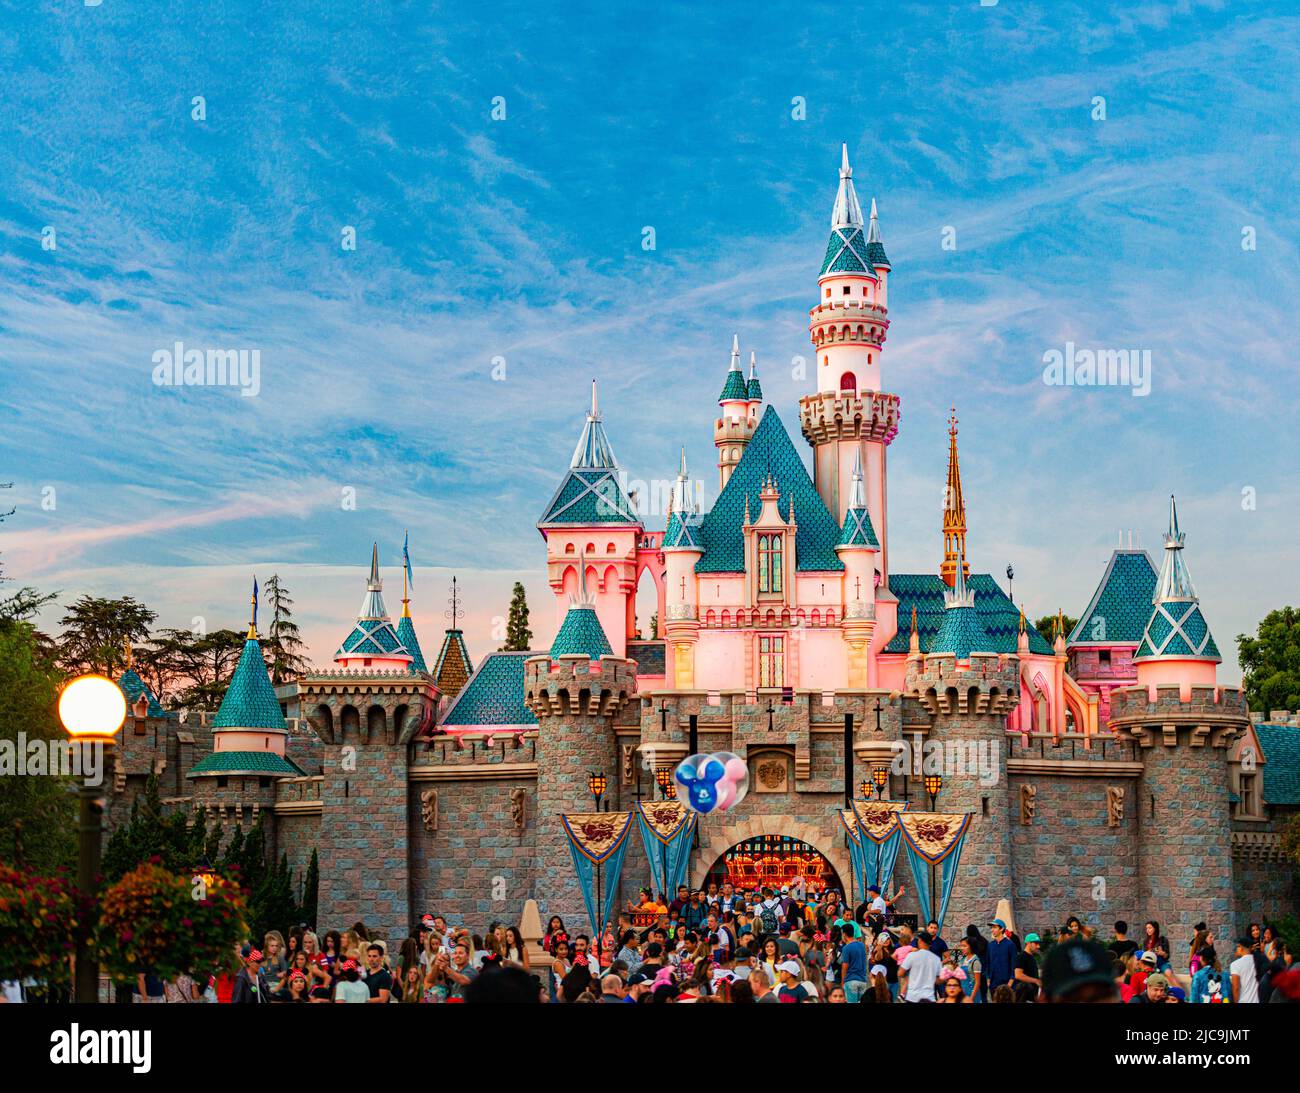 Anaheim, Estados Unidos de América - 23 de octubre de 2016: Legendario castillo Disney de la belleza del sueño en Disneyland Foto de stock